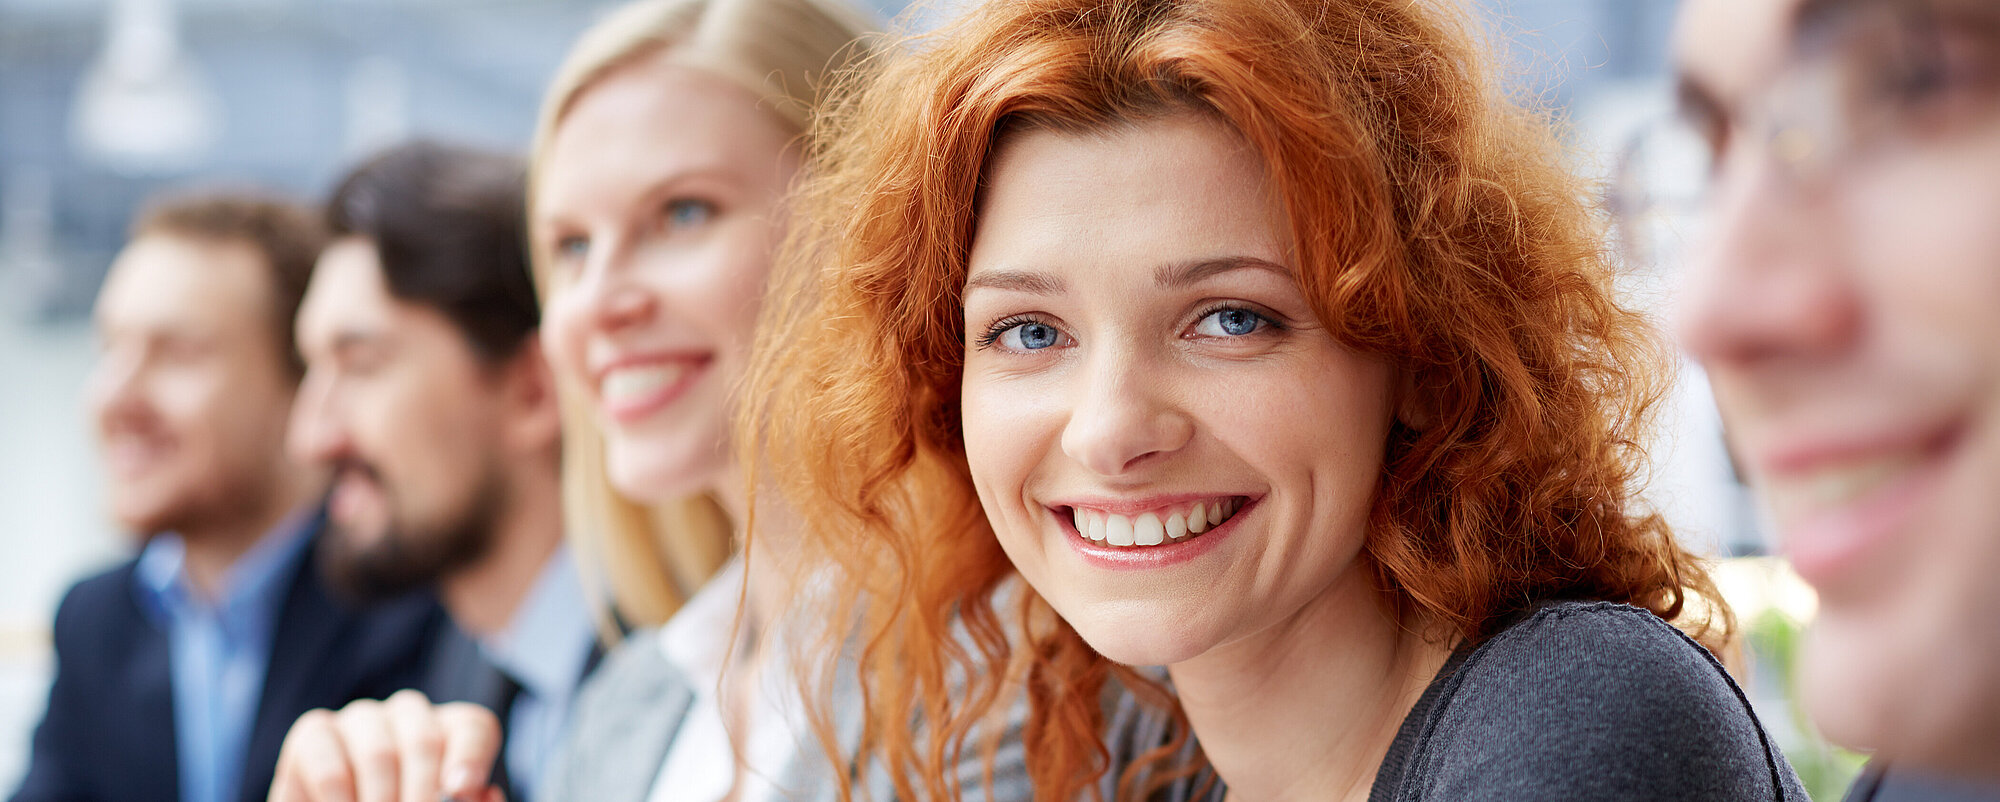 Startbild: Foto von Menschen bei einem Vortrag, im Vordergrund eine rothaarige Frau, die in die Kamera lächelt